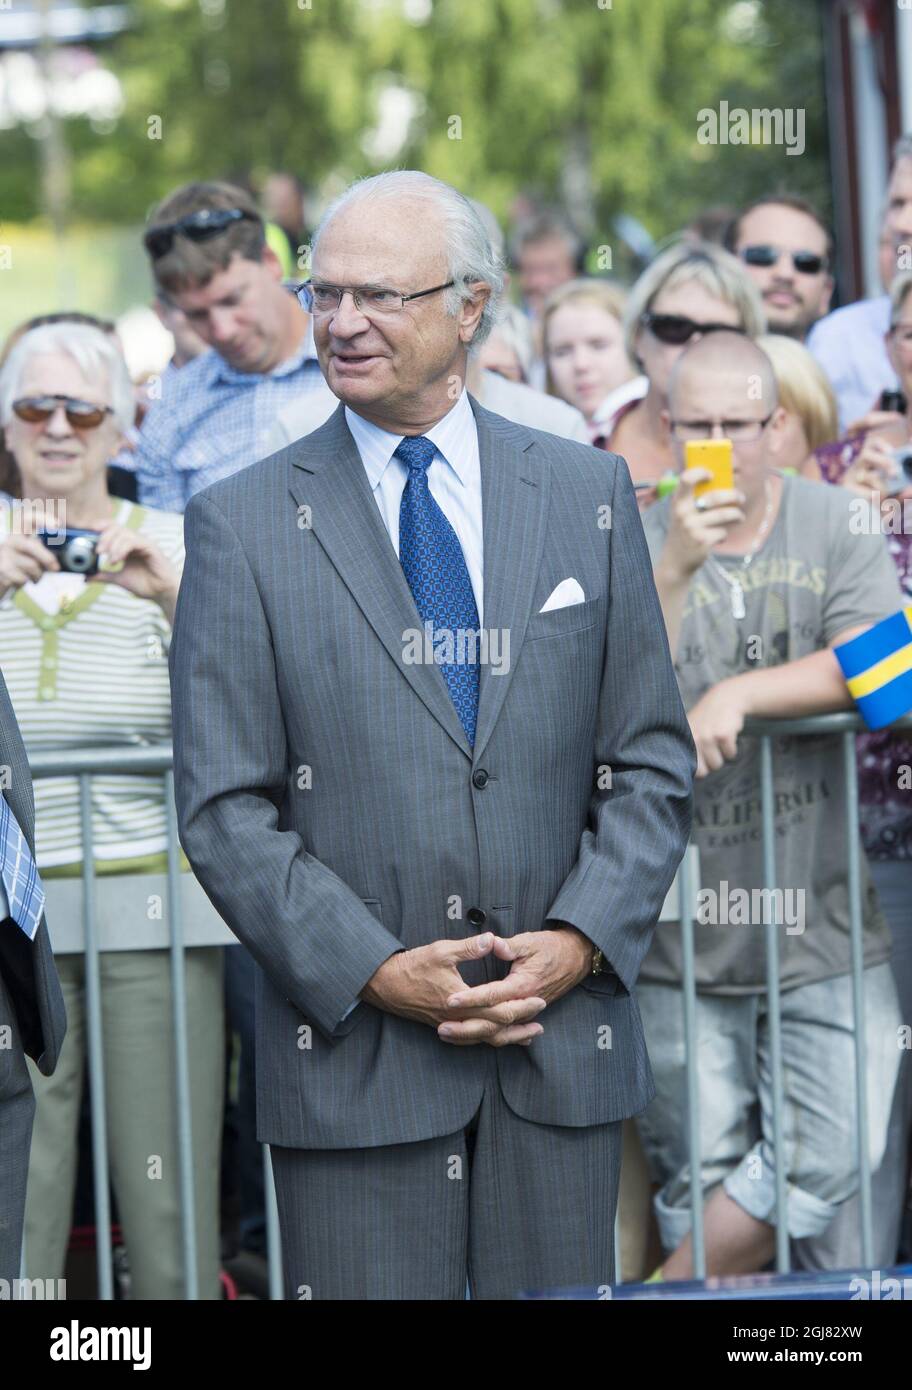 FORSHAGA 2013 King Carl Gustaf of Sweden and Queen Silvia.  Kung Carl Gustaf och drottning Silvia ser pÃƒÂ¥ hund dressyr. Detta pÃƒÂ¥ Forshagaakademi, besÃƒÂ¶ket var en del av kungens resa i VÃƒÂ¤rmland idag. Kungen reser under ÃƒÂ¥ret till alla svenska lÃƒÂ¤n som en del av hans firande av 40 ÃƒÂ¥r pÃƒÂ¥ tronen.ka lÃƒÂ¤n som en del av hans firande av 40 ÃƒÂ¥r pÃƒÂ¥ tronen.  Foto: Fredrik Sandberg / SCANPIX / Kod 10080 Stock Photo